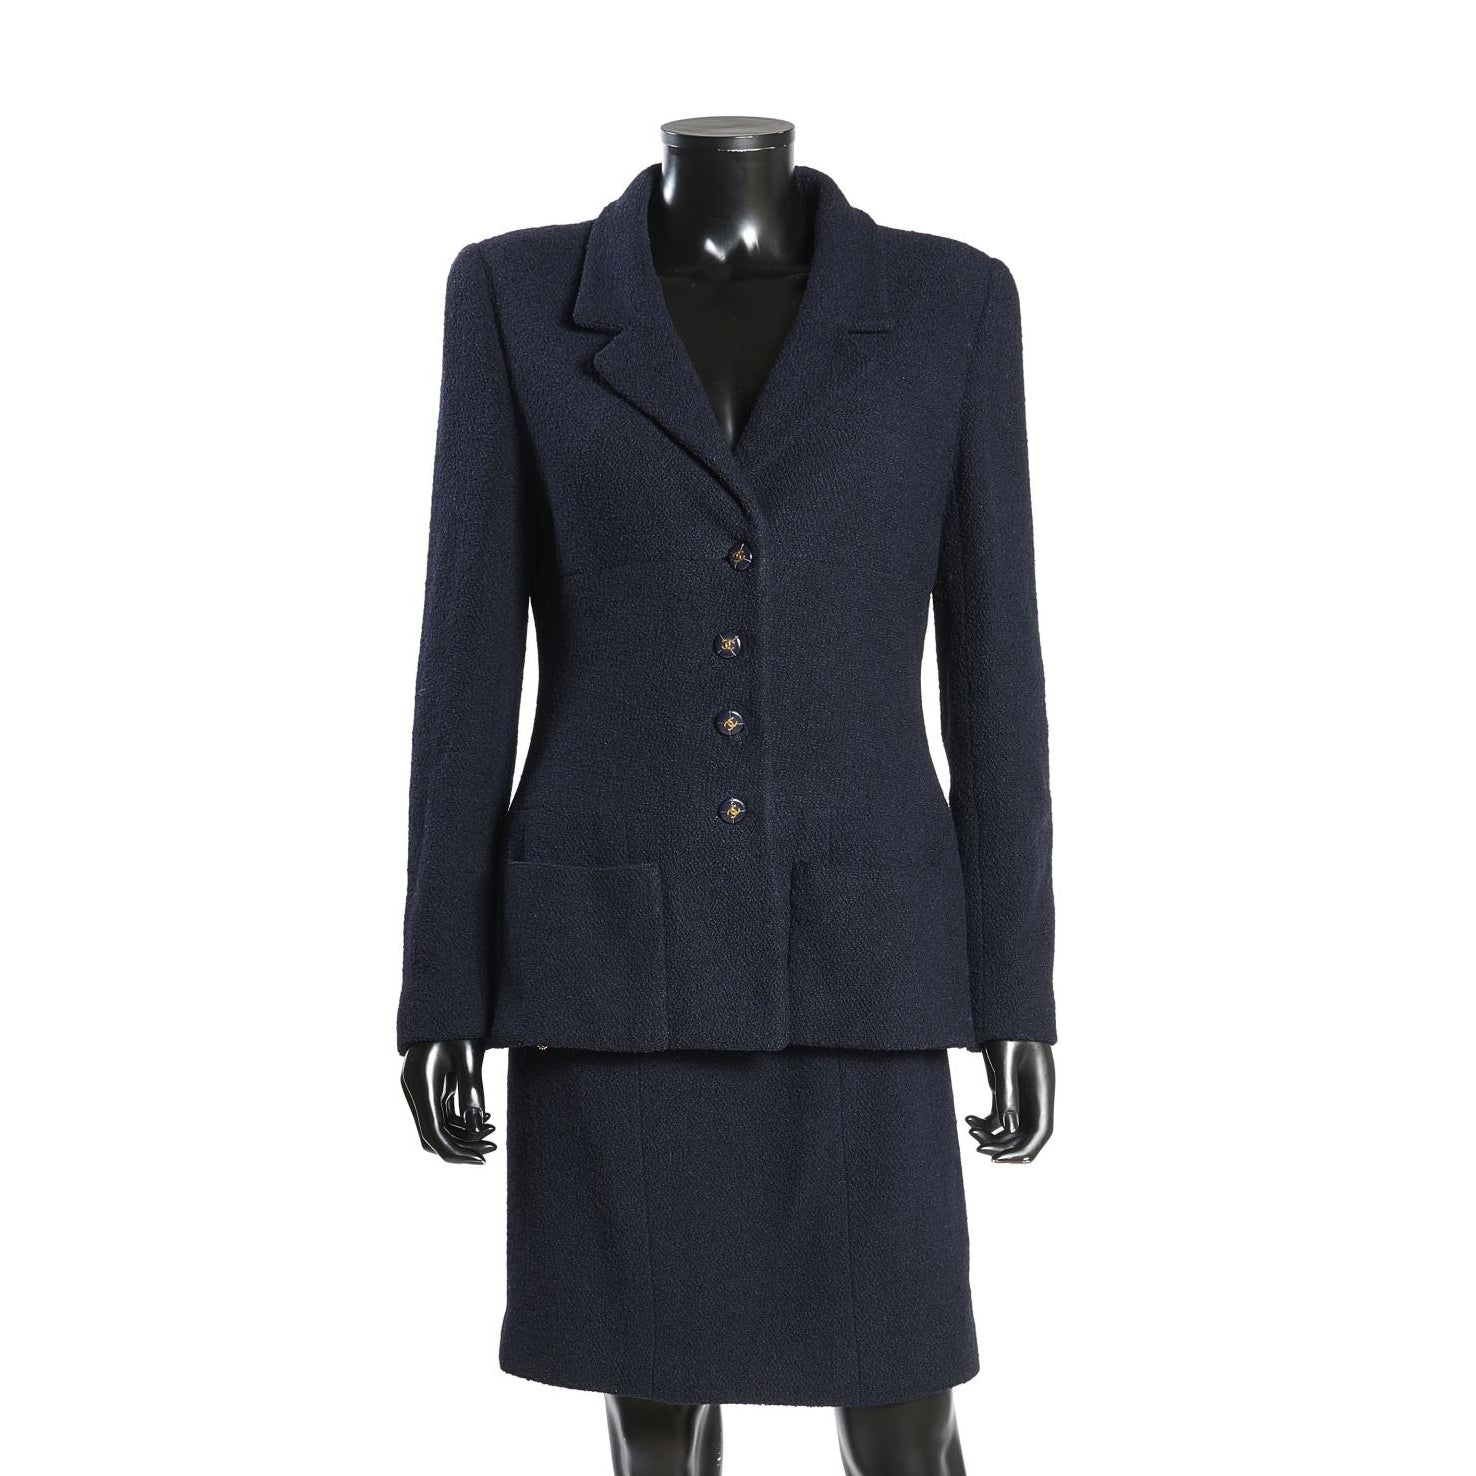 Chanel Boutique Navy Suit - Women's Size 44